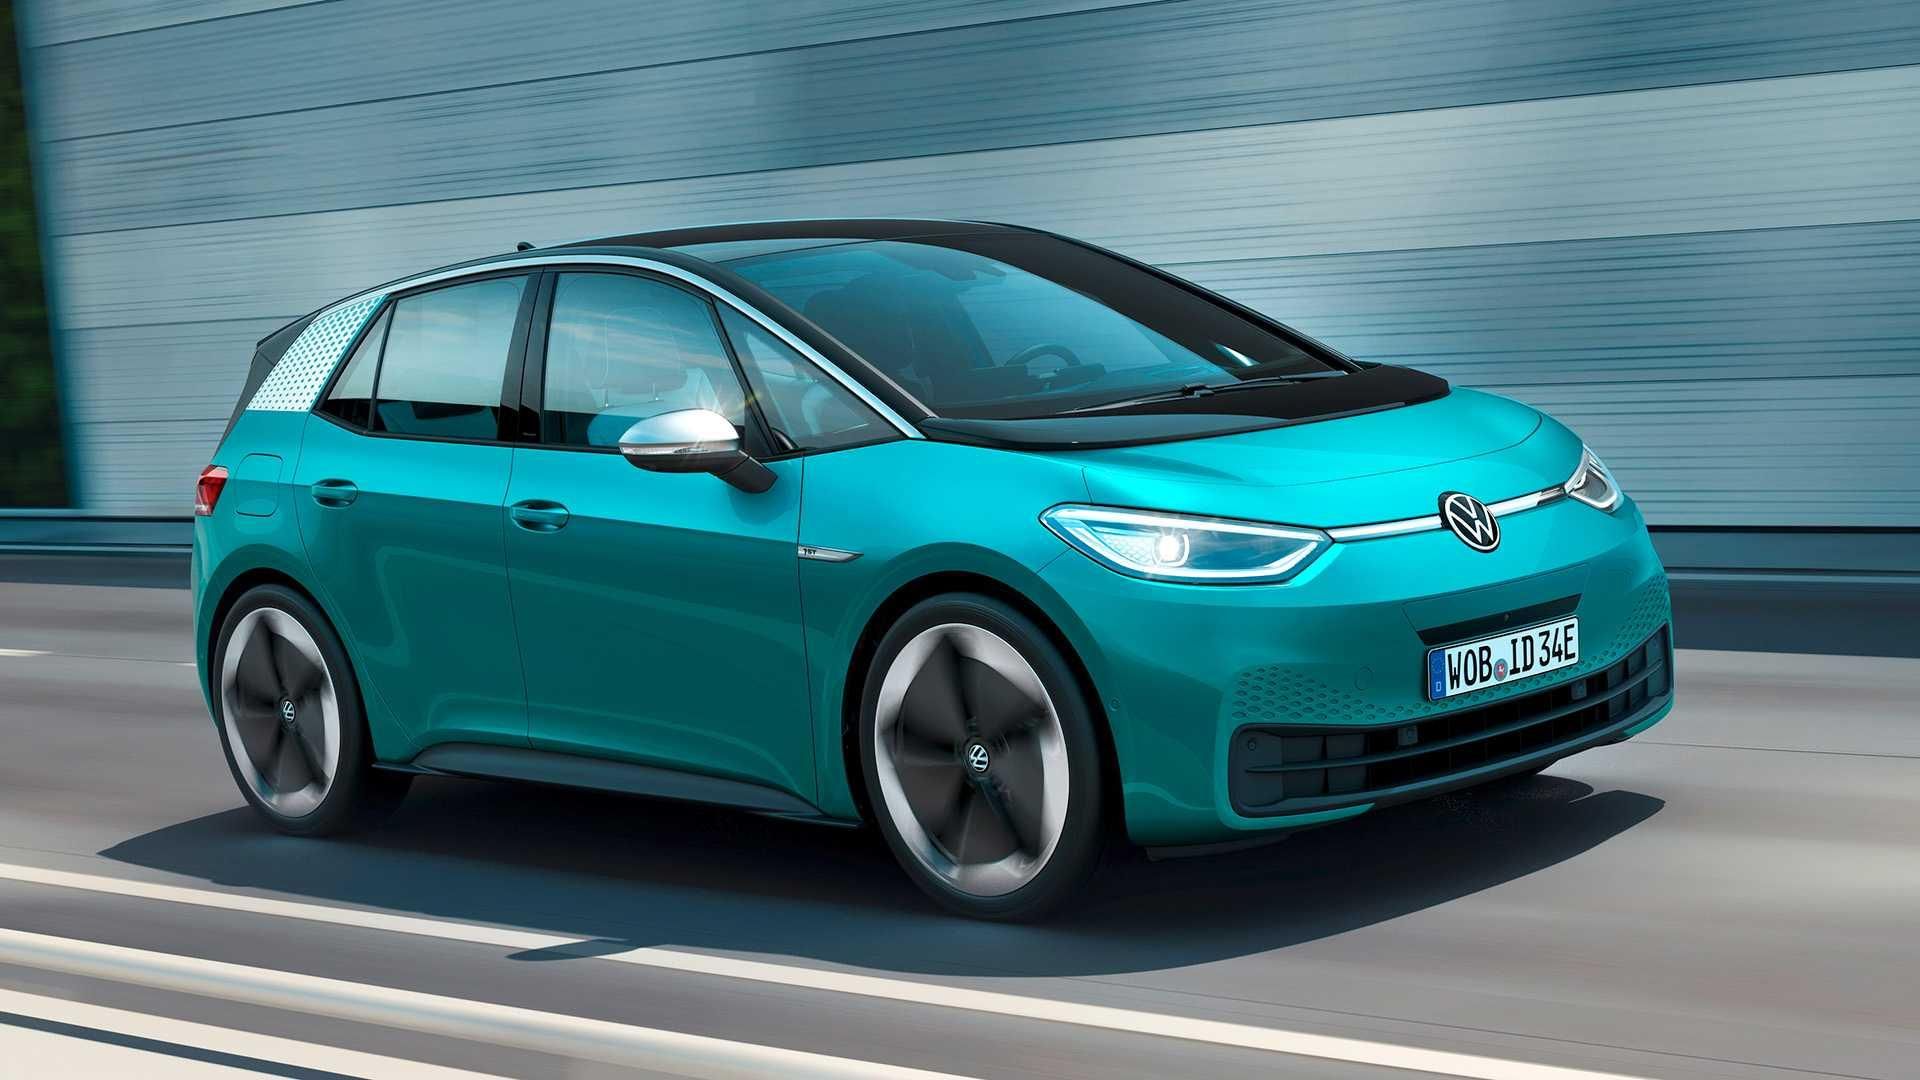 Volkswagen promete 100 mil carros em dois meses